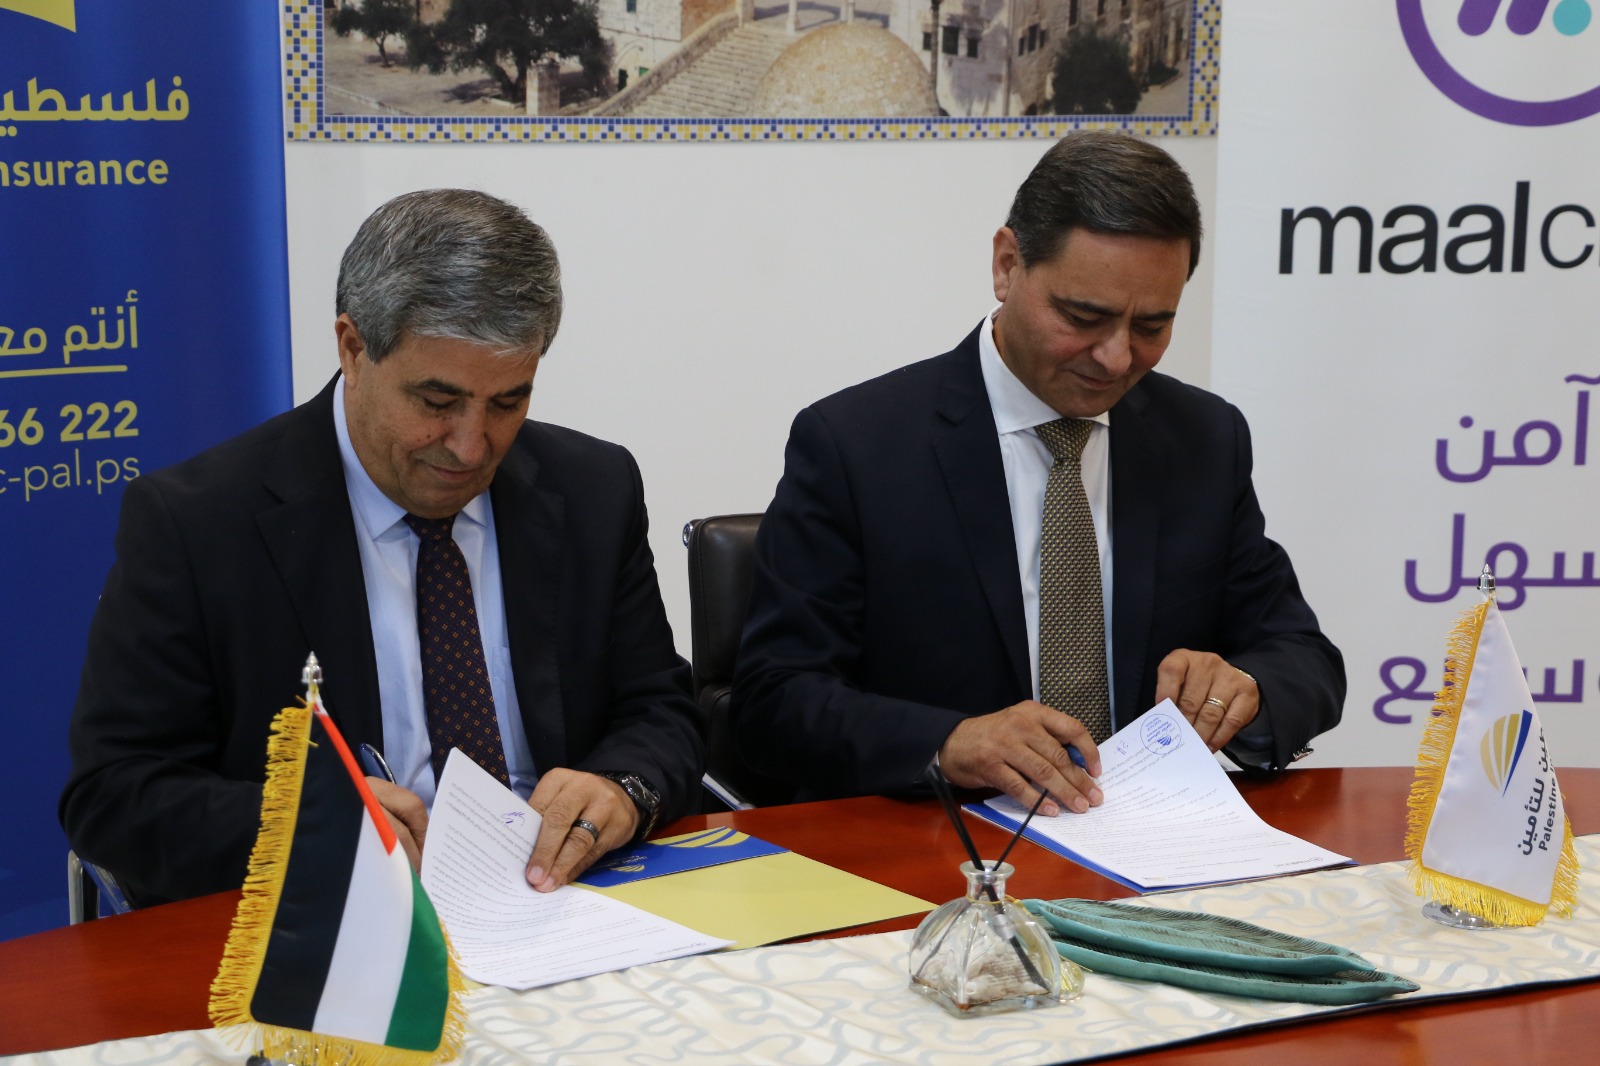 شركة maalchat و شركة فلسطين للتأمين يوقعان اتفاقية عمل  لتقديم خدمات الدفع الاكتروني من خلال المحفظة الإلكترونية